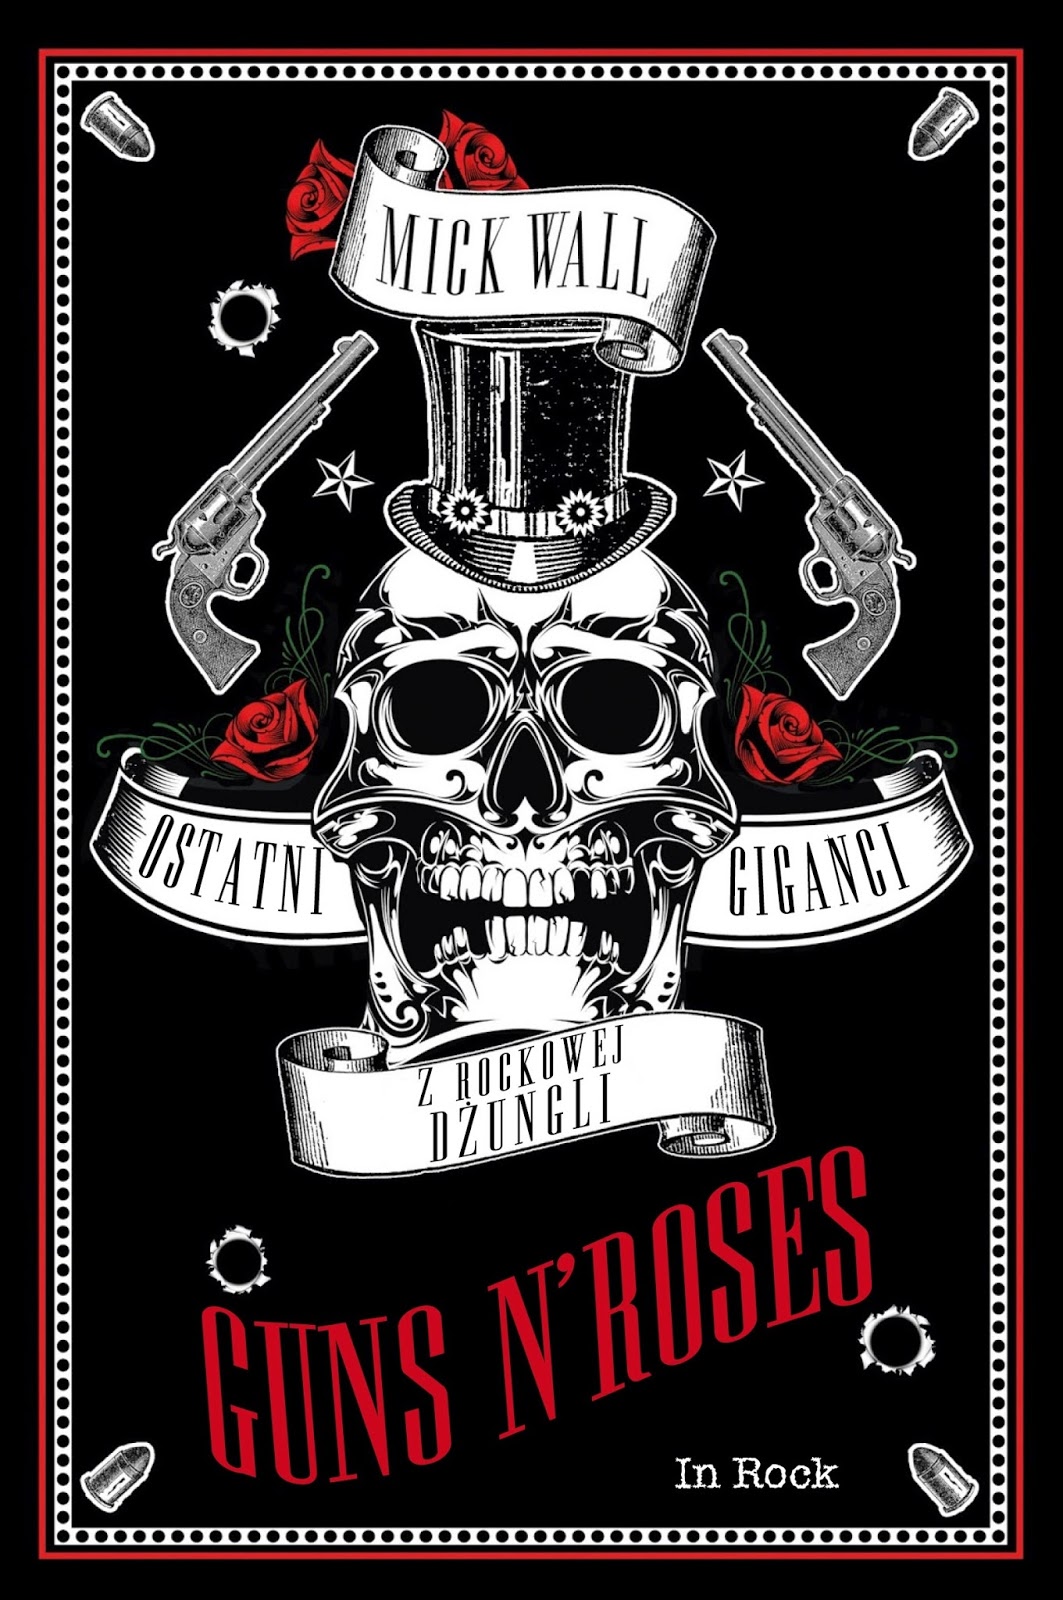 Guns N' Roses. Ostatni giganci z rockowej dżungli, Mick Wall, Wydawnictwo In Rock, 2017